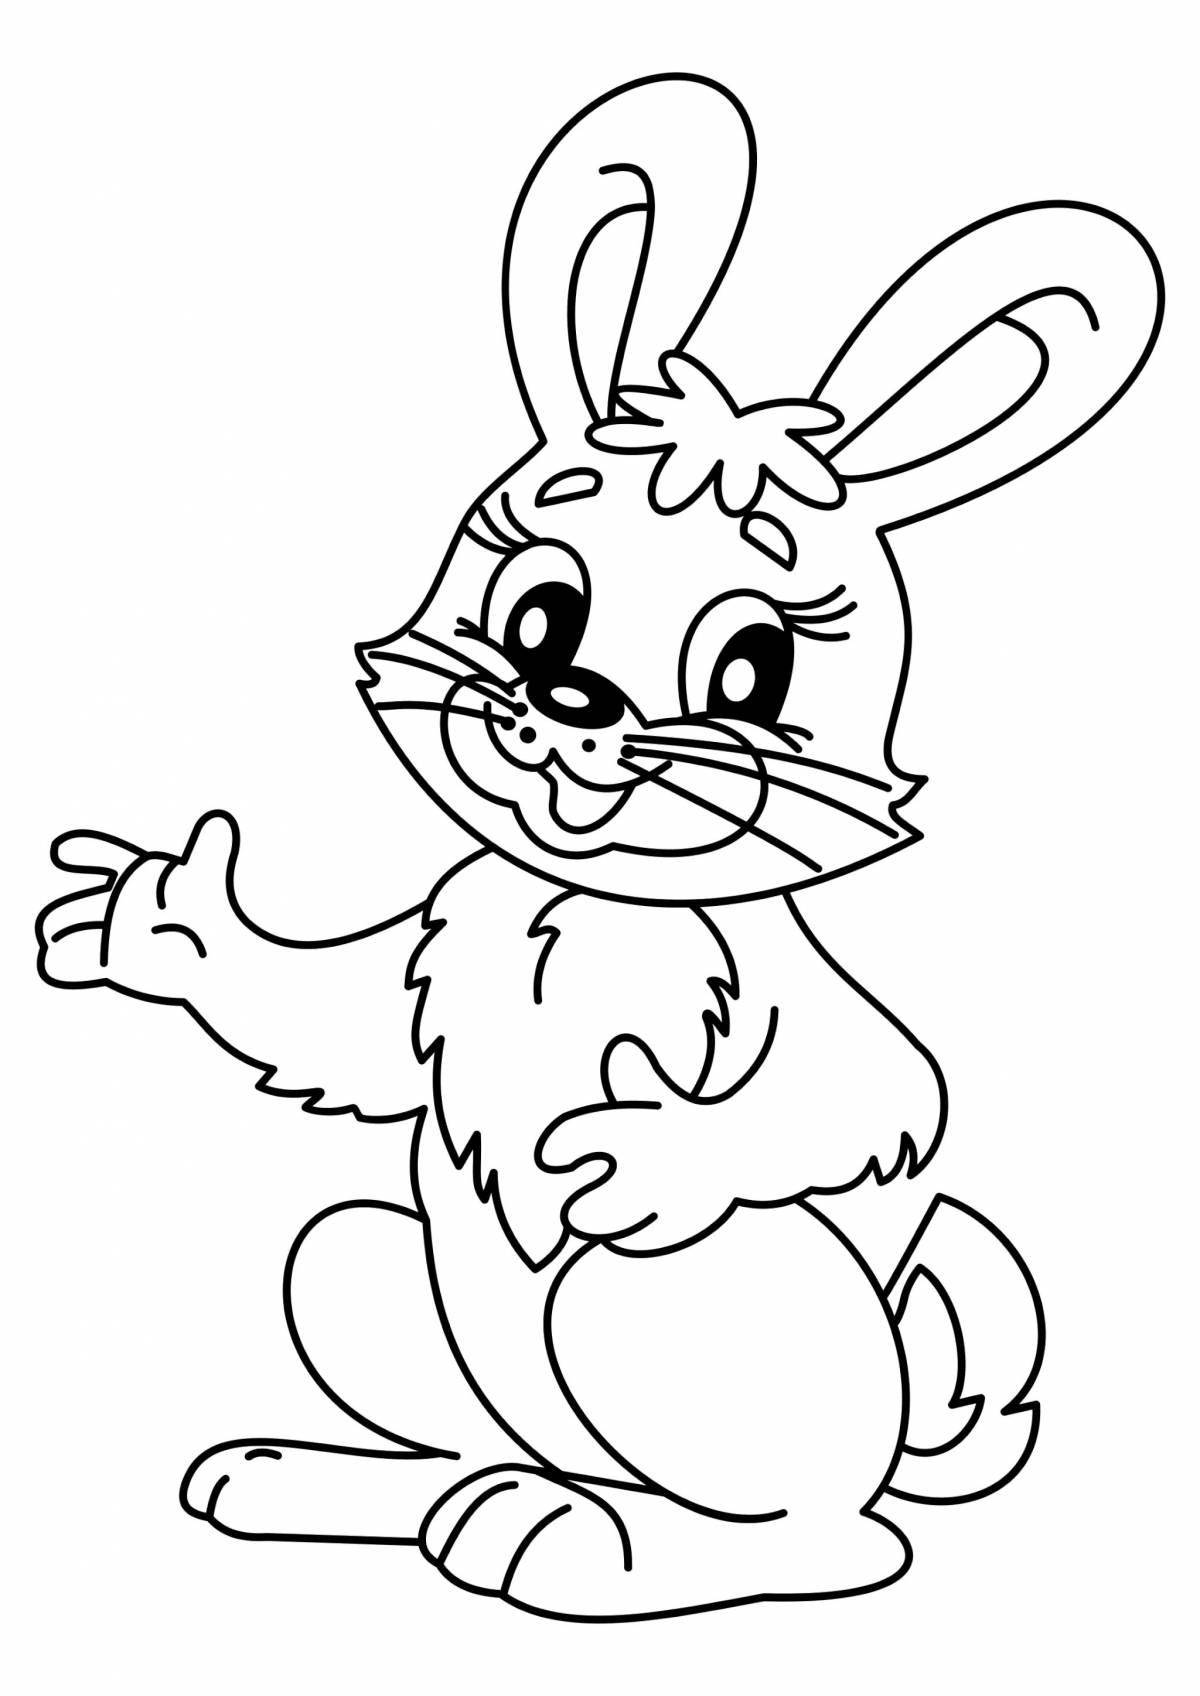 Великолепный заяц-раскраска для детей 6-7 лет